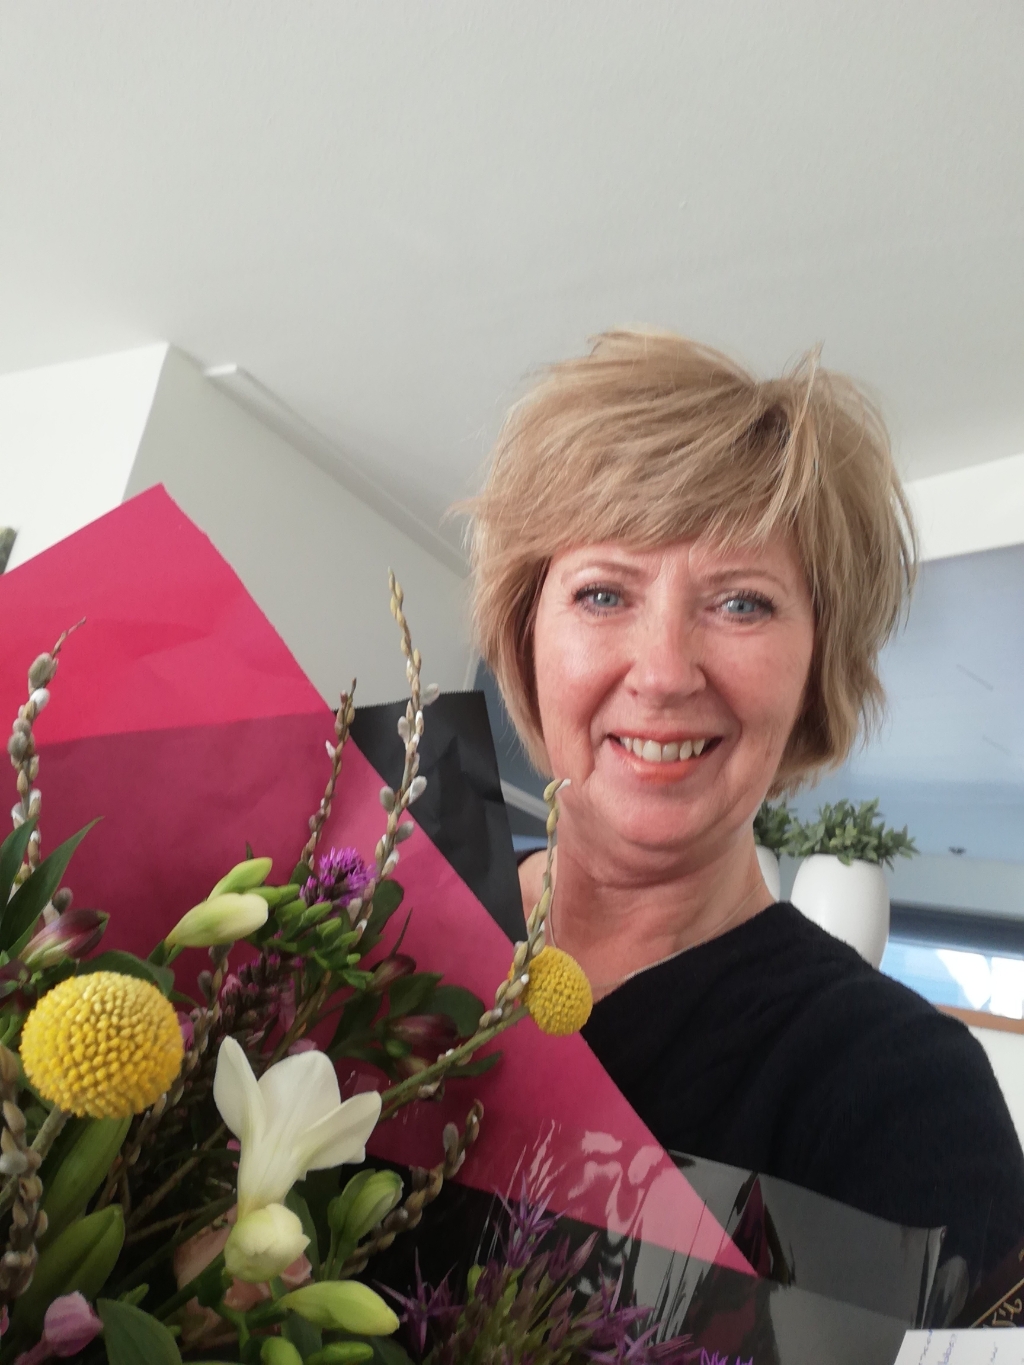 Sylvia Versluis is heel blij met de bos bloemen als blijk van waardering voor haar inzet voor de bridgesport.